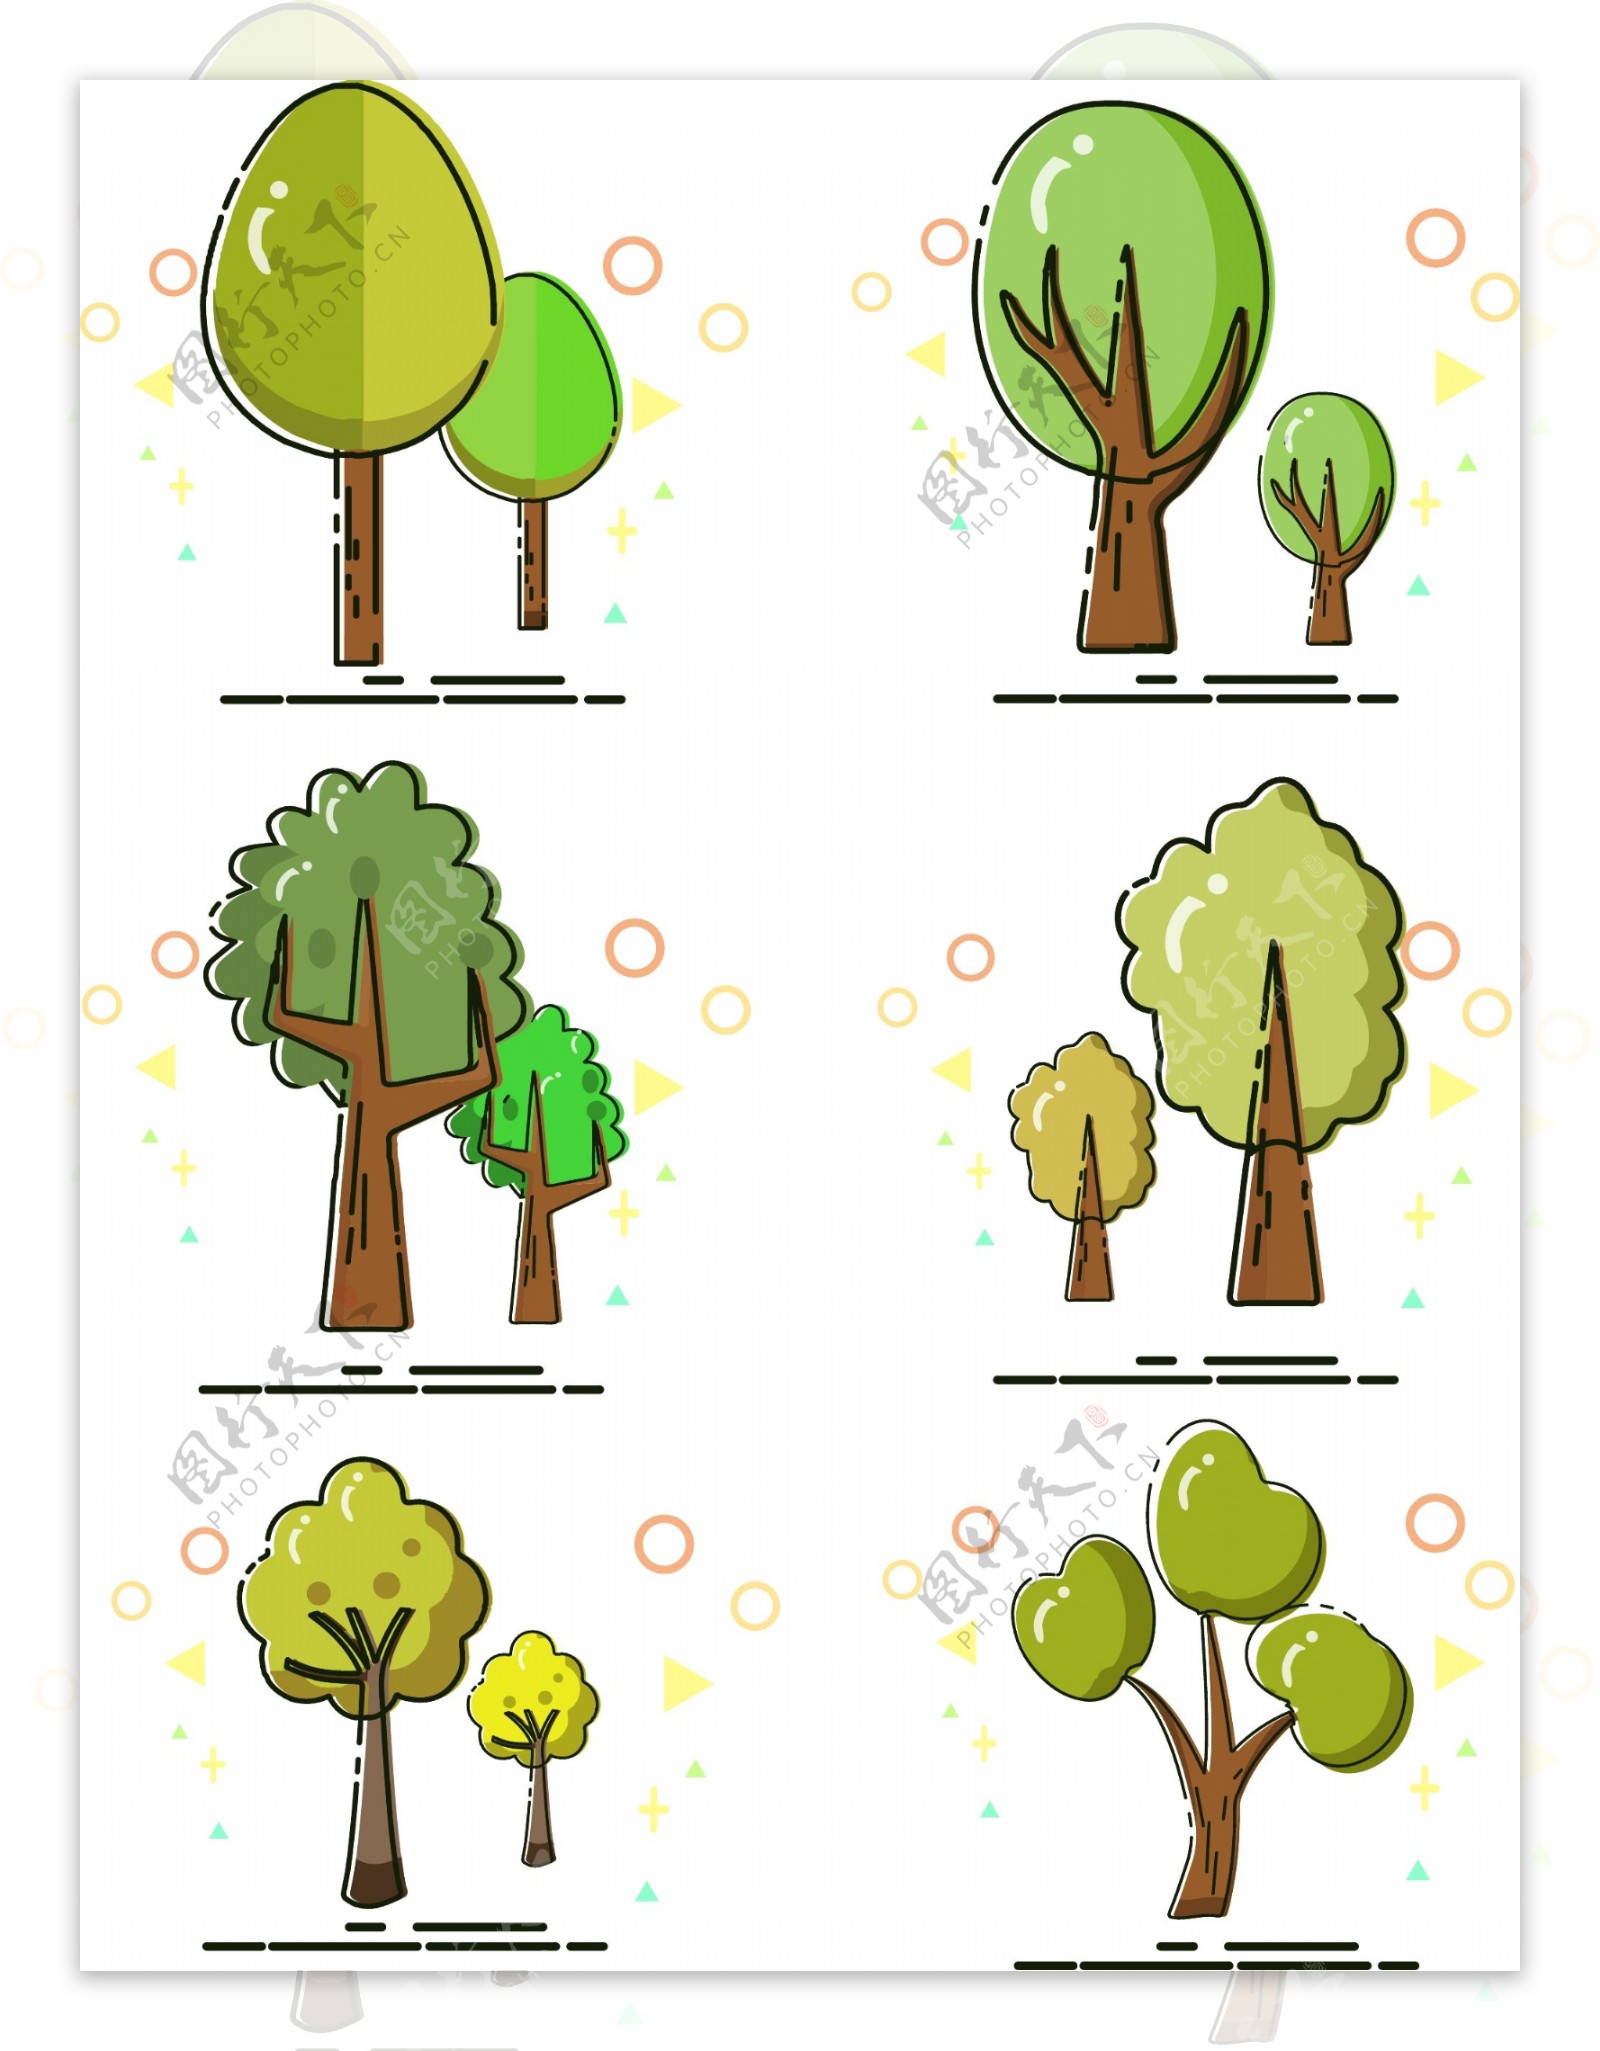 meb风格卡通树木集合可商用